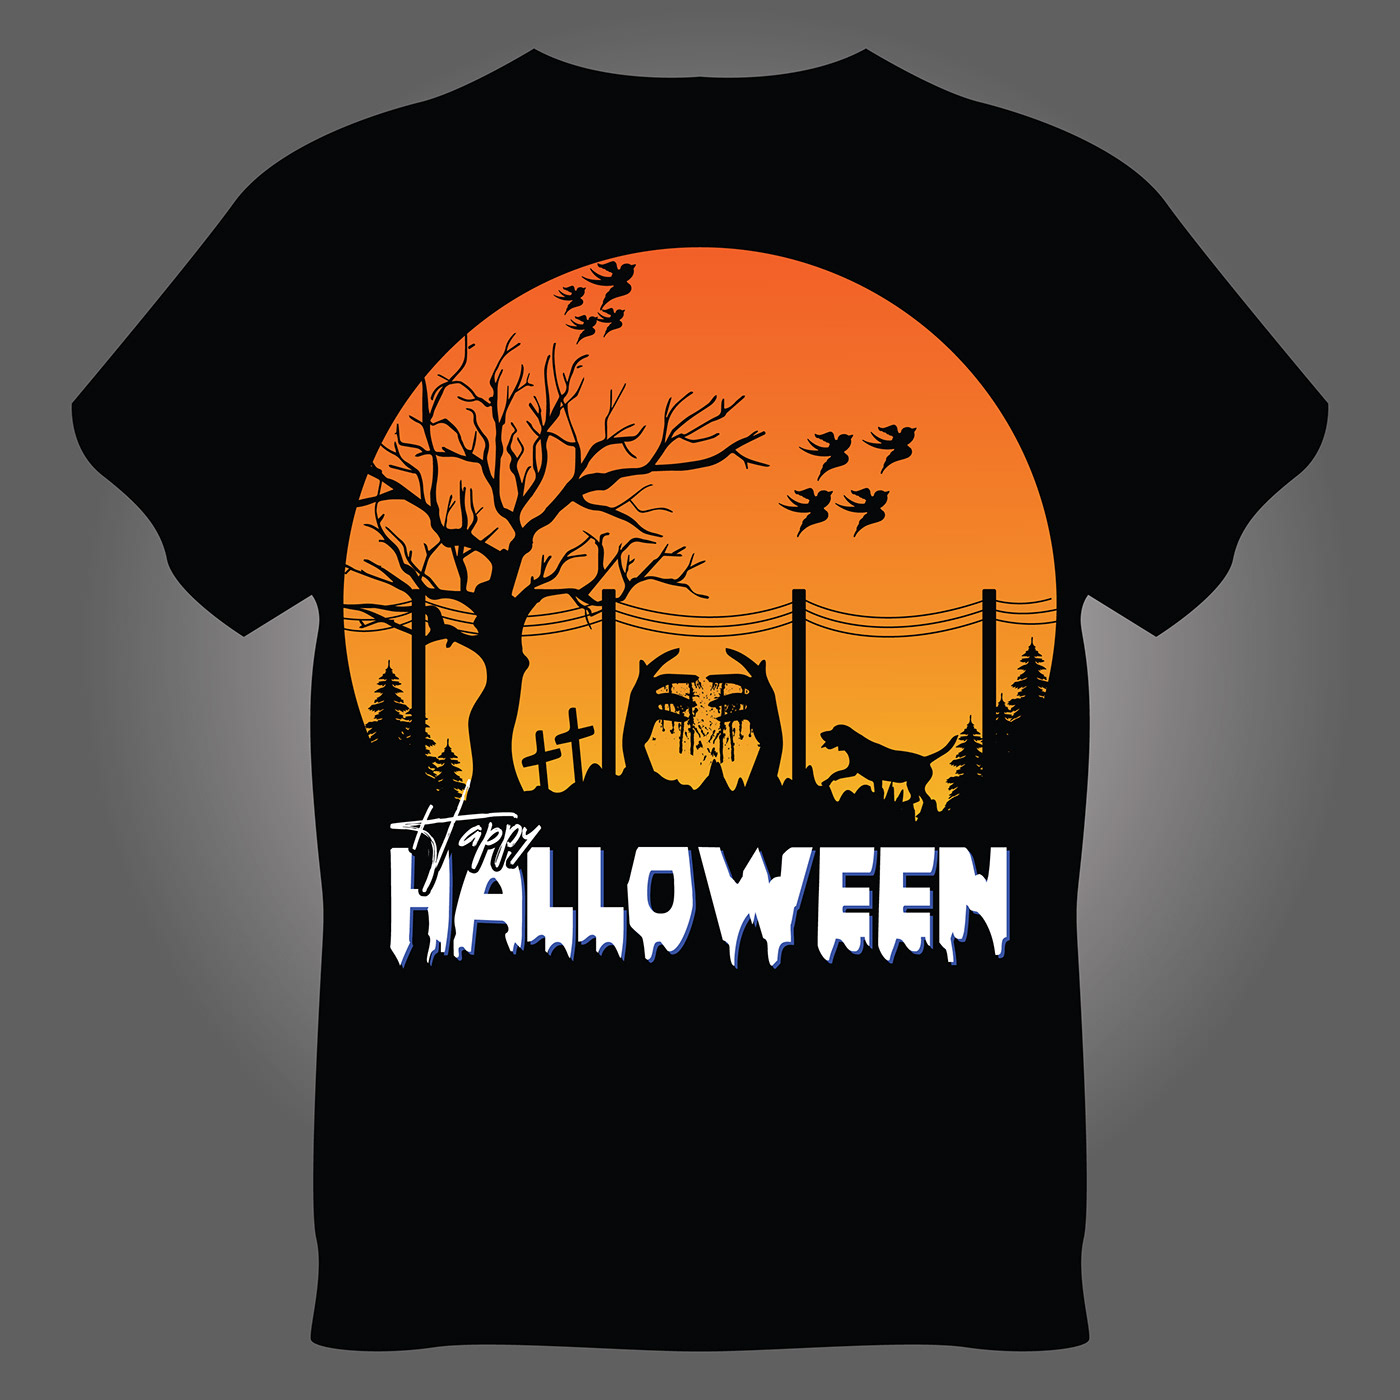 Halloween T-Shirt design Halloween party pumpkin t shirt design T Shirt typography   vector ILLUSTRATION  art